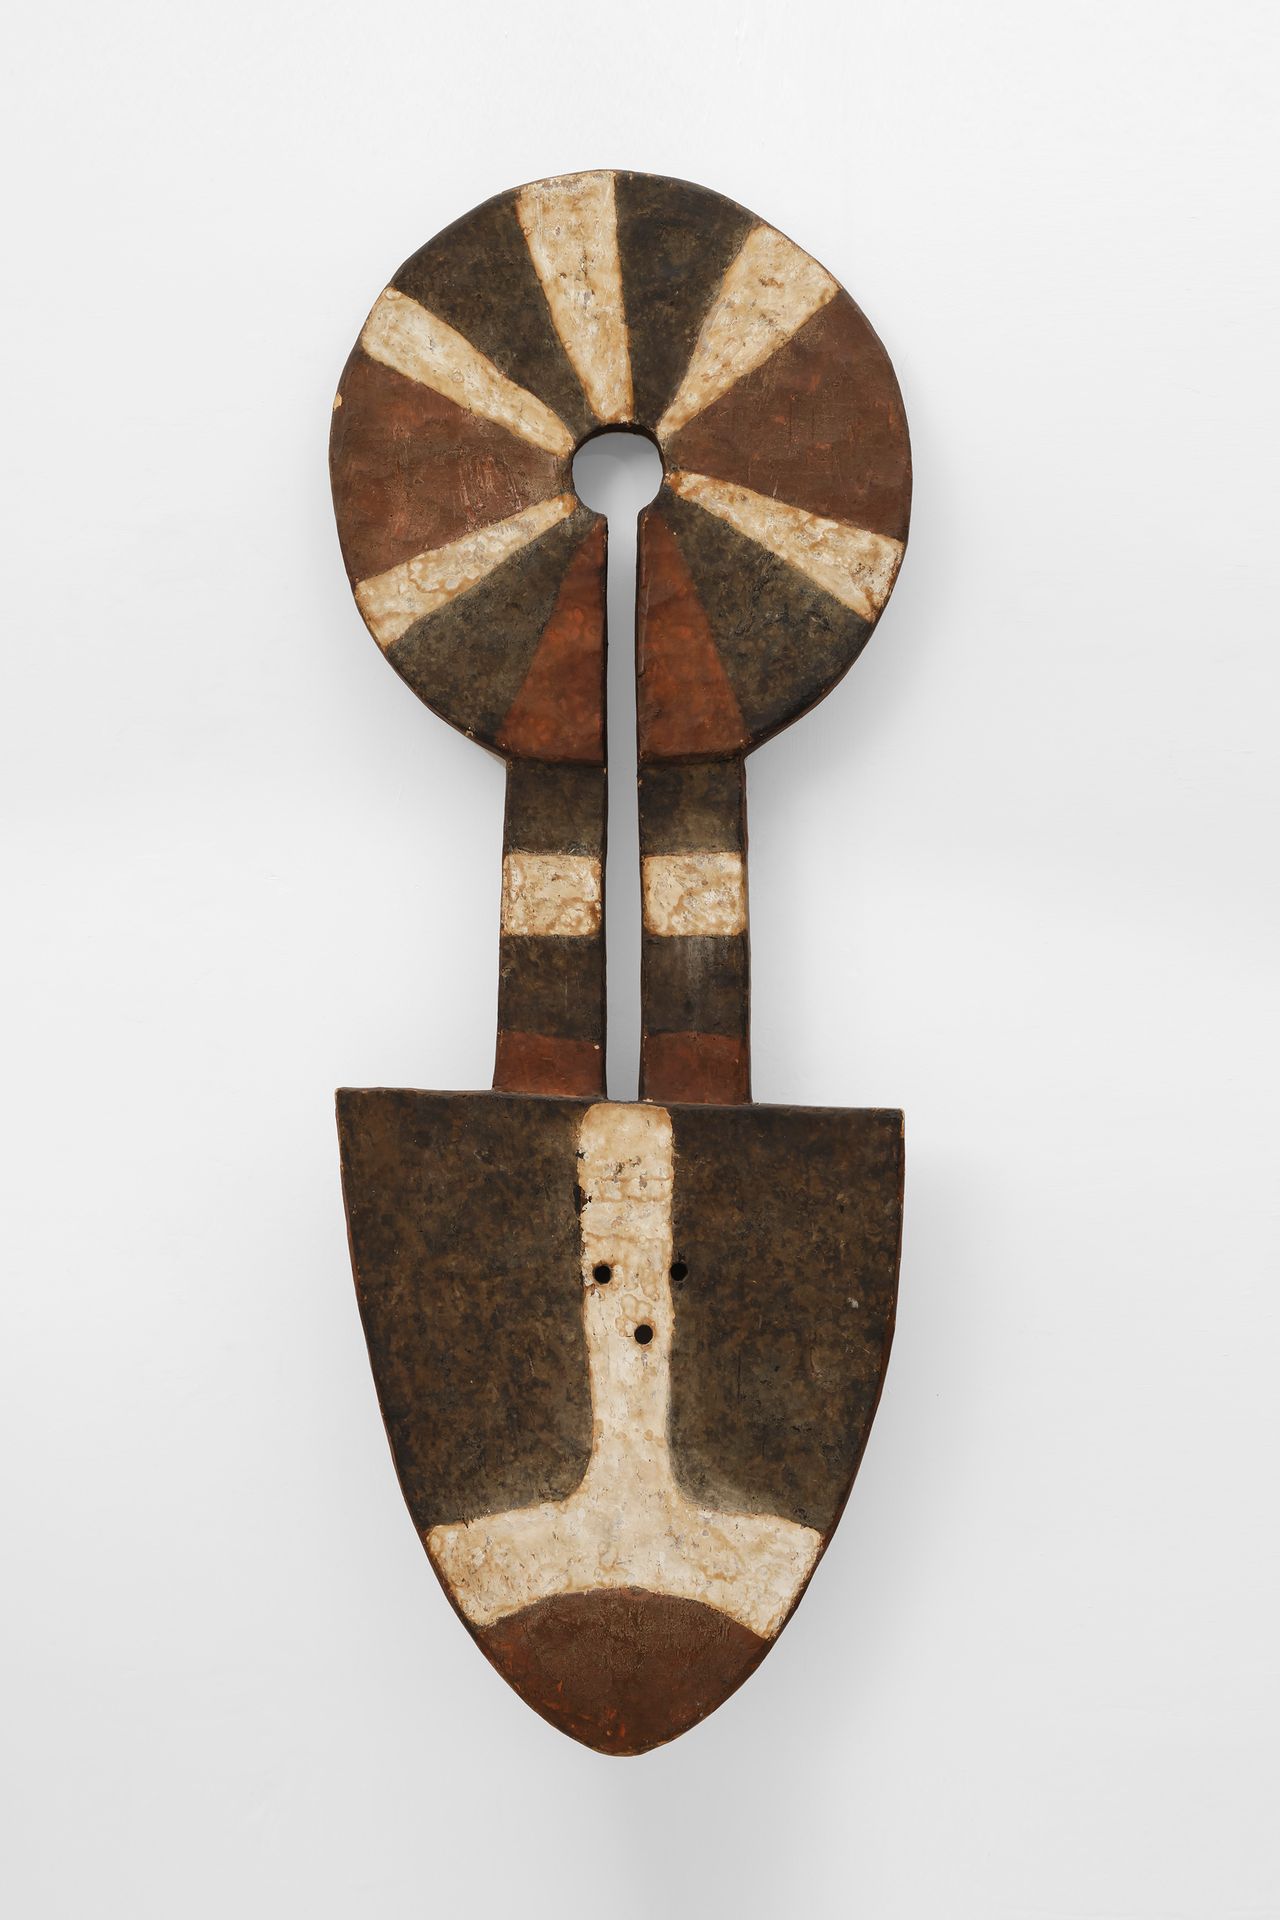 Nafana Mask Ivory Coast (Elfenbeinküste)

Holz und Pigment - 142 cm

Herkunft:

&hellip;